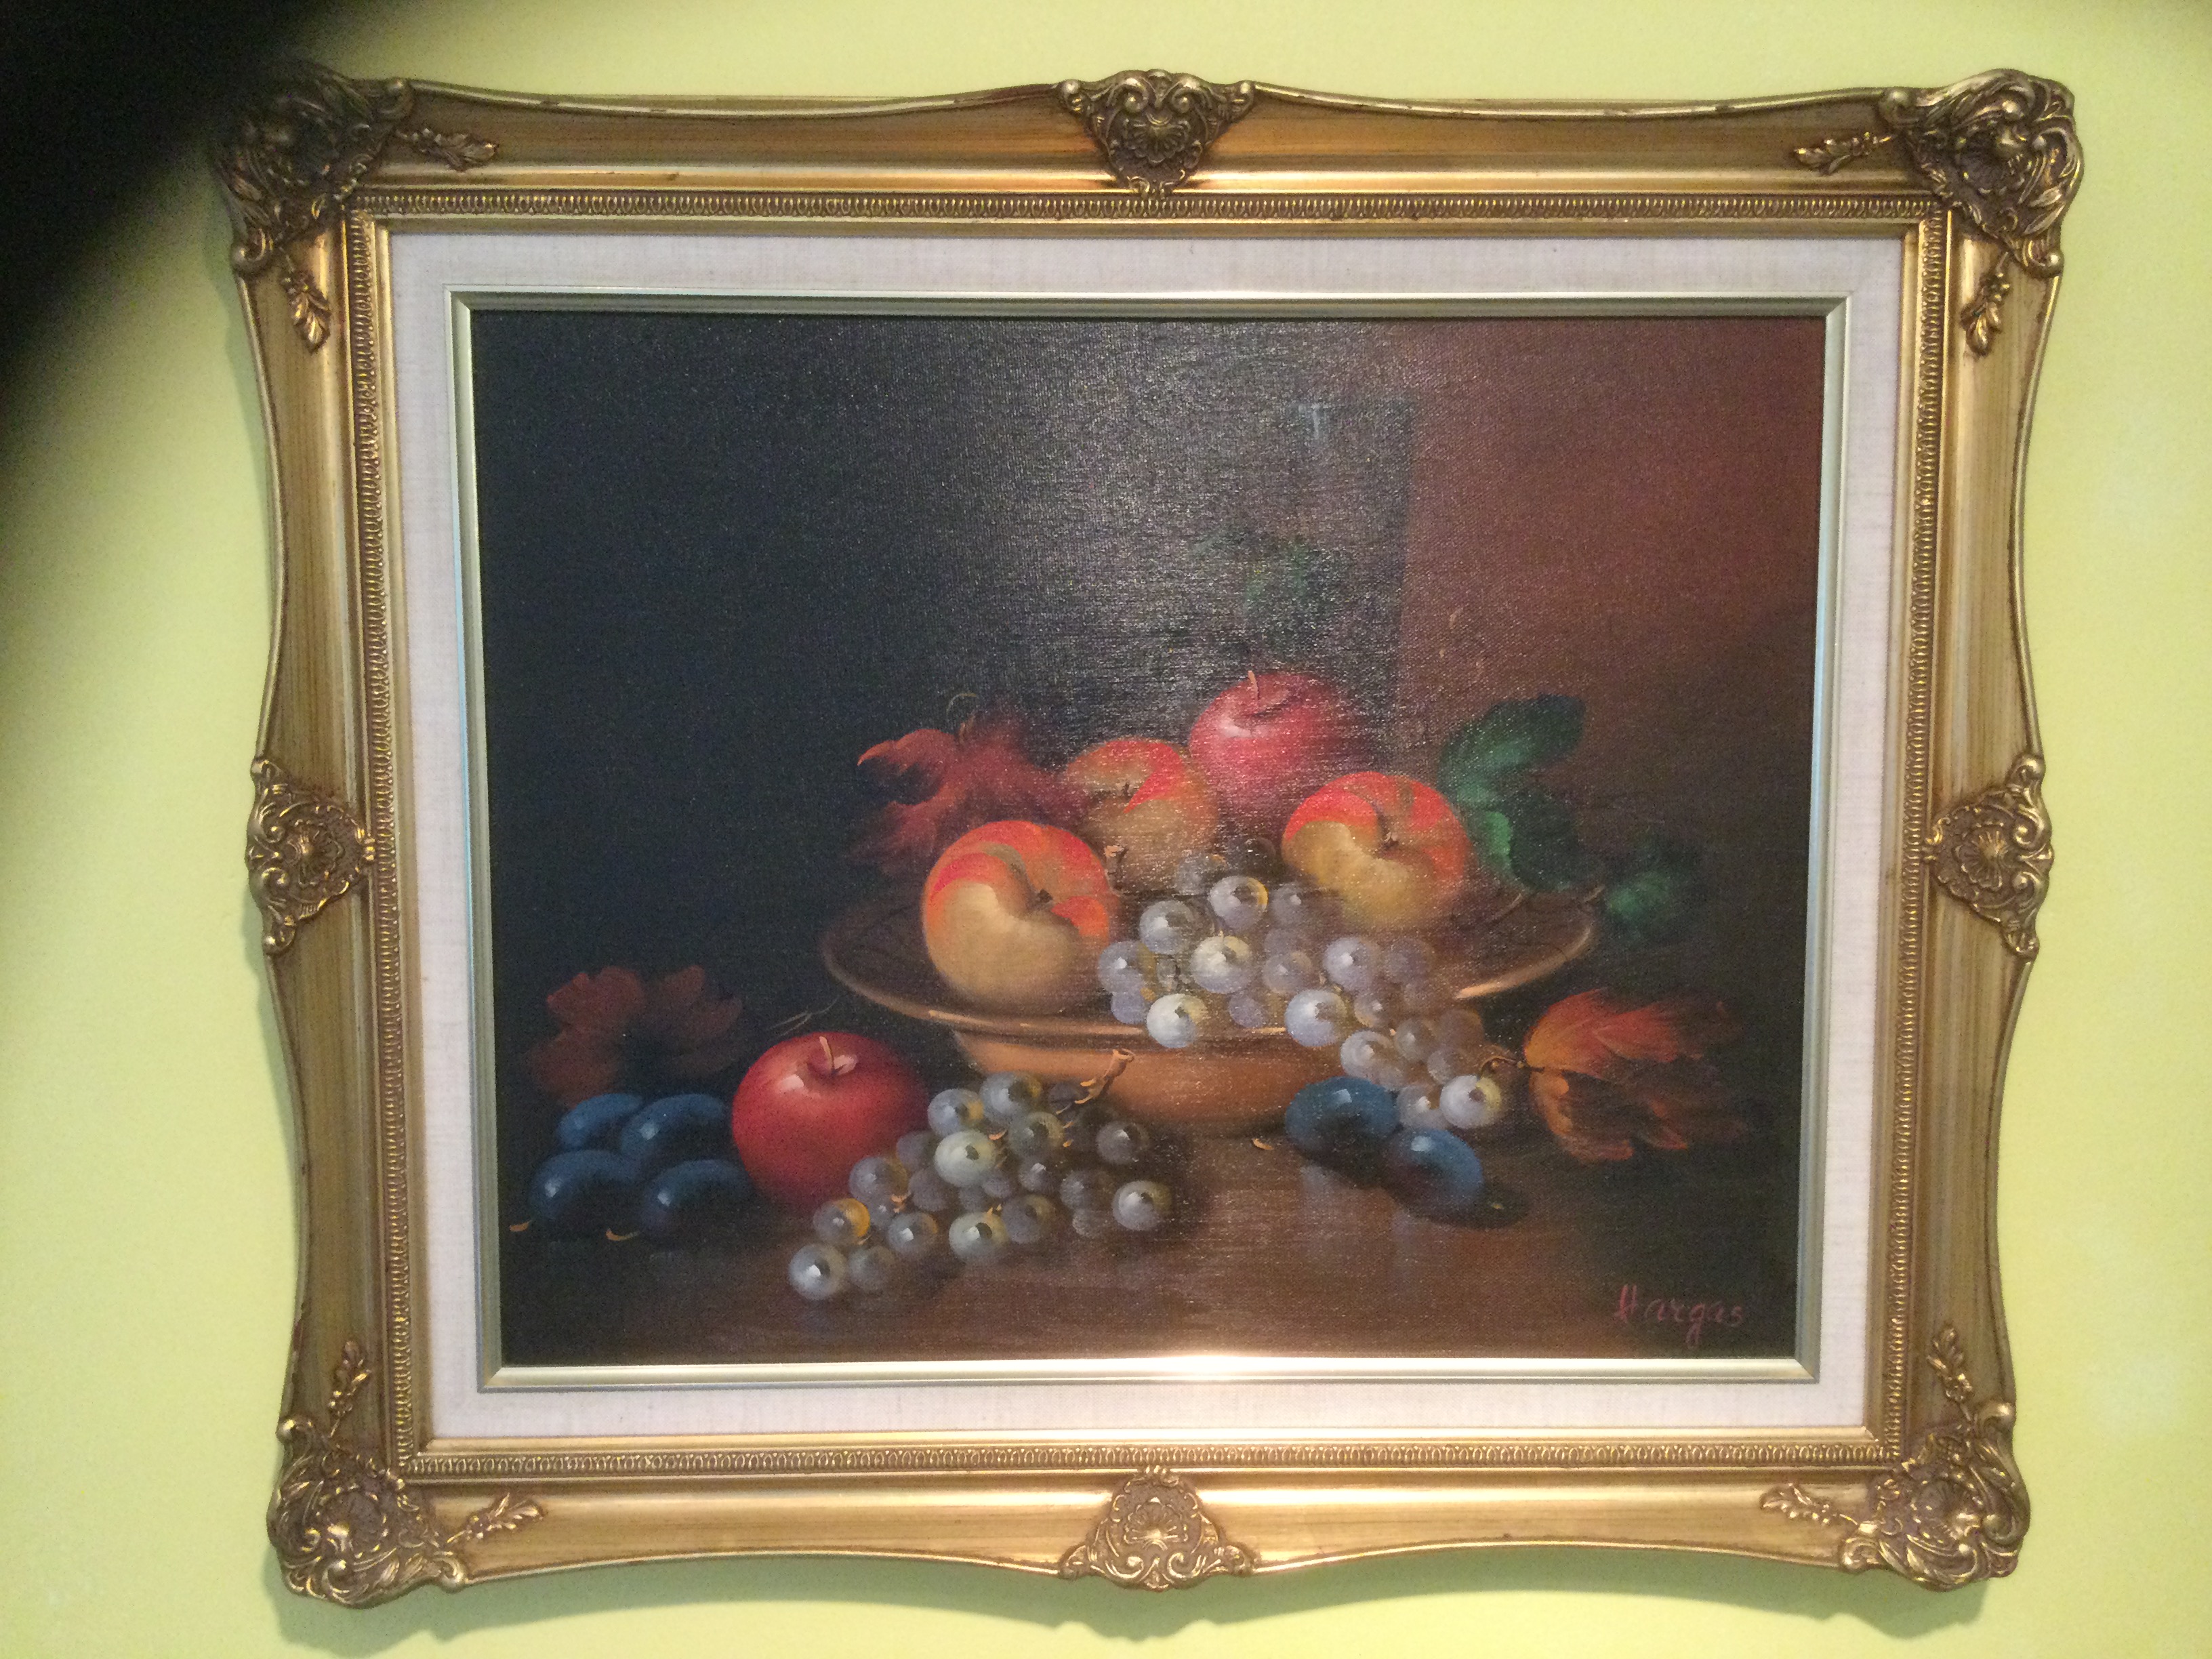 A Still Life of Fruit by Vargas 